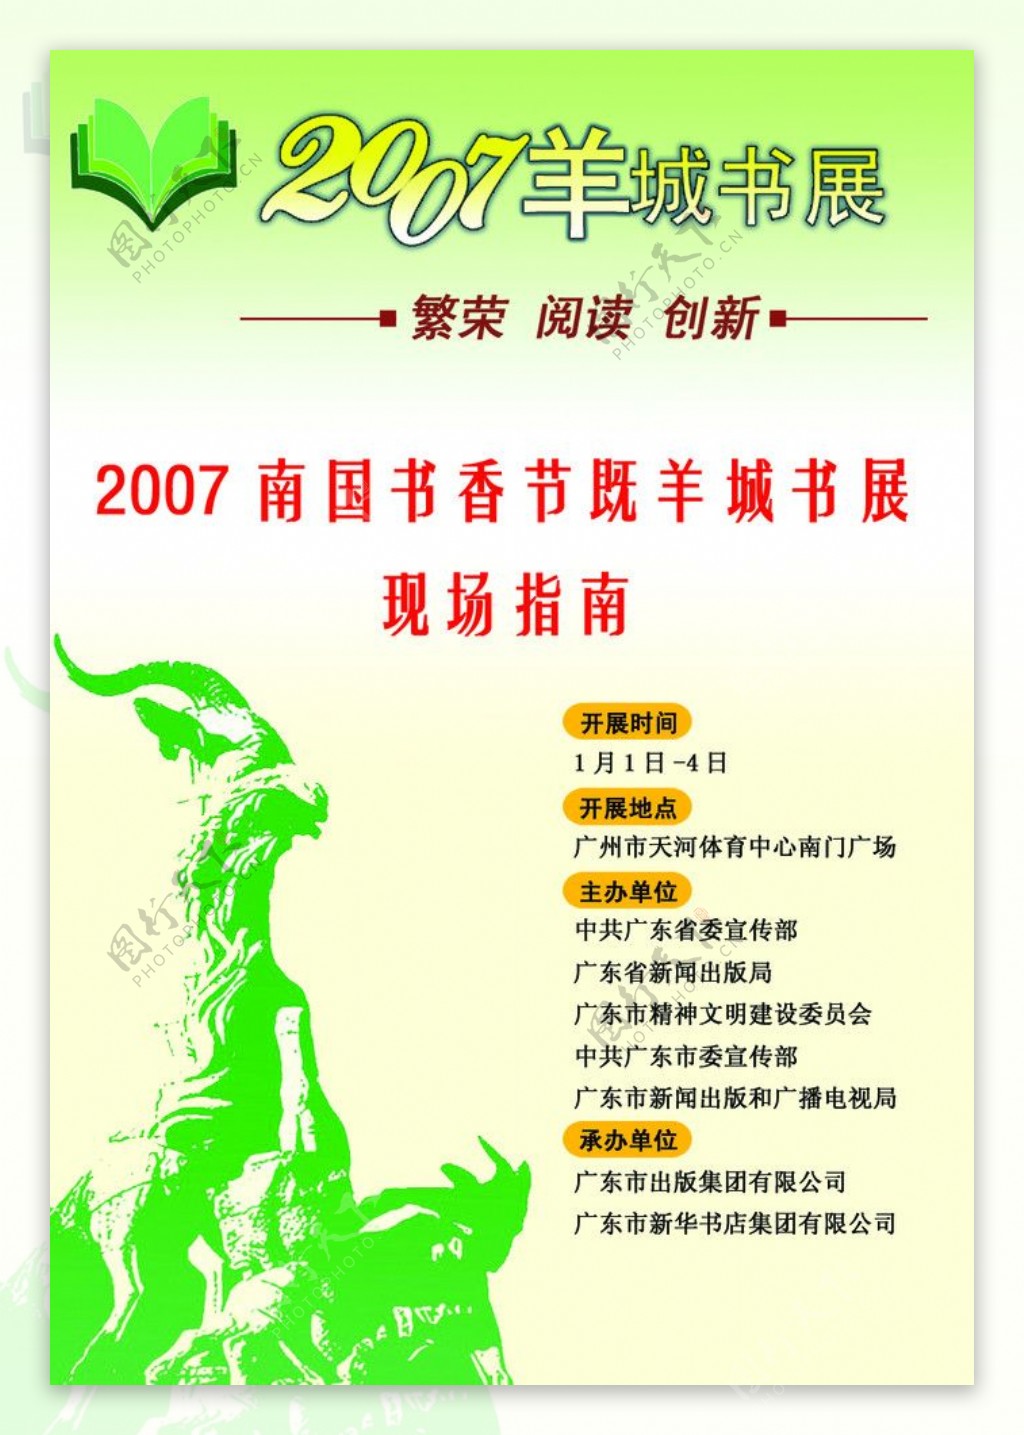 2007羊城书展图片